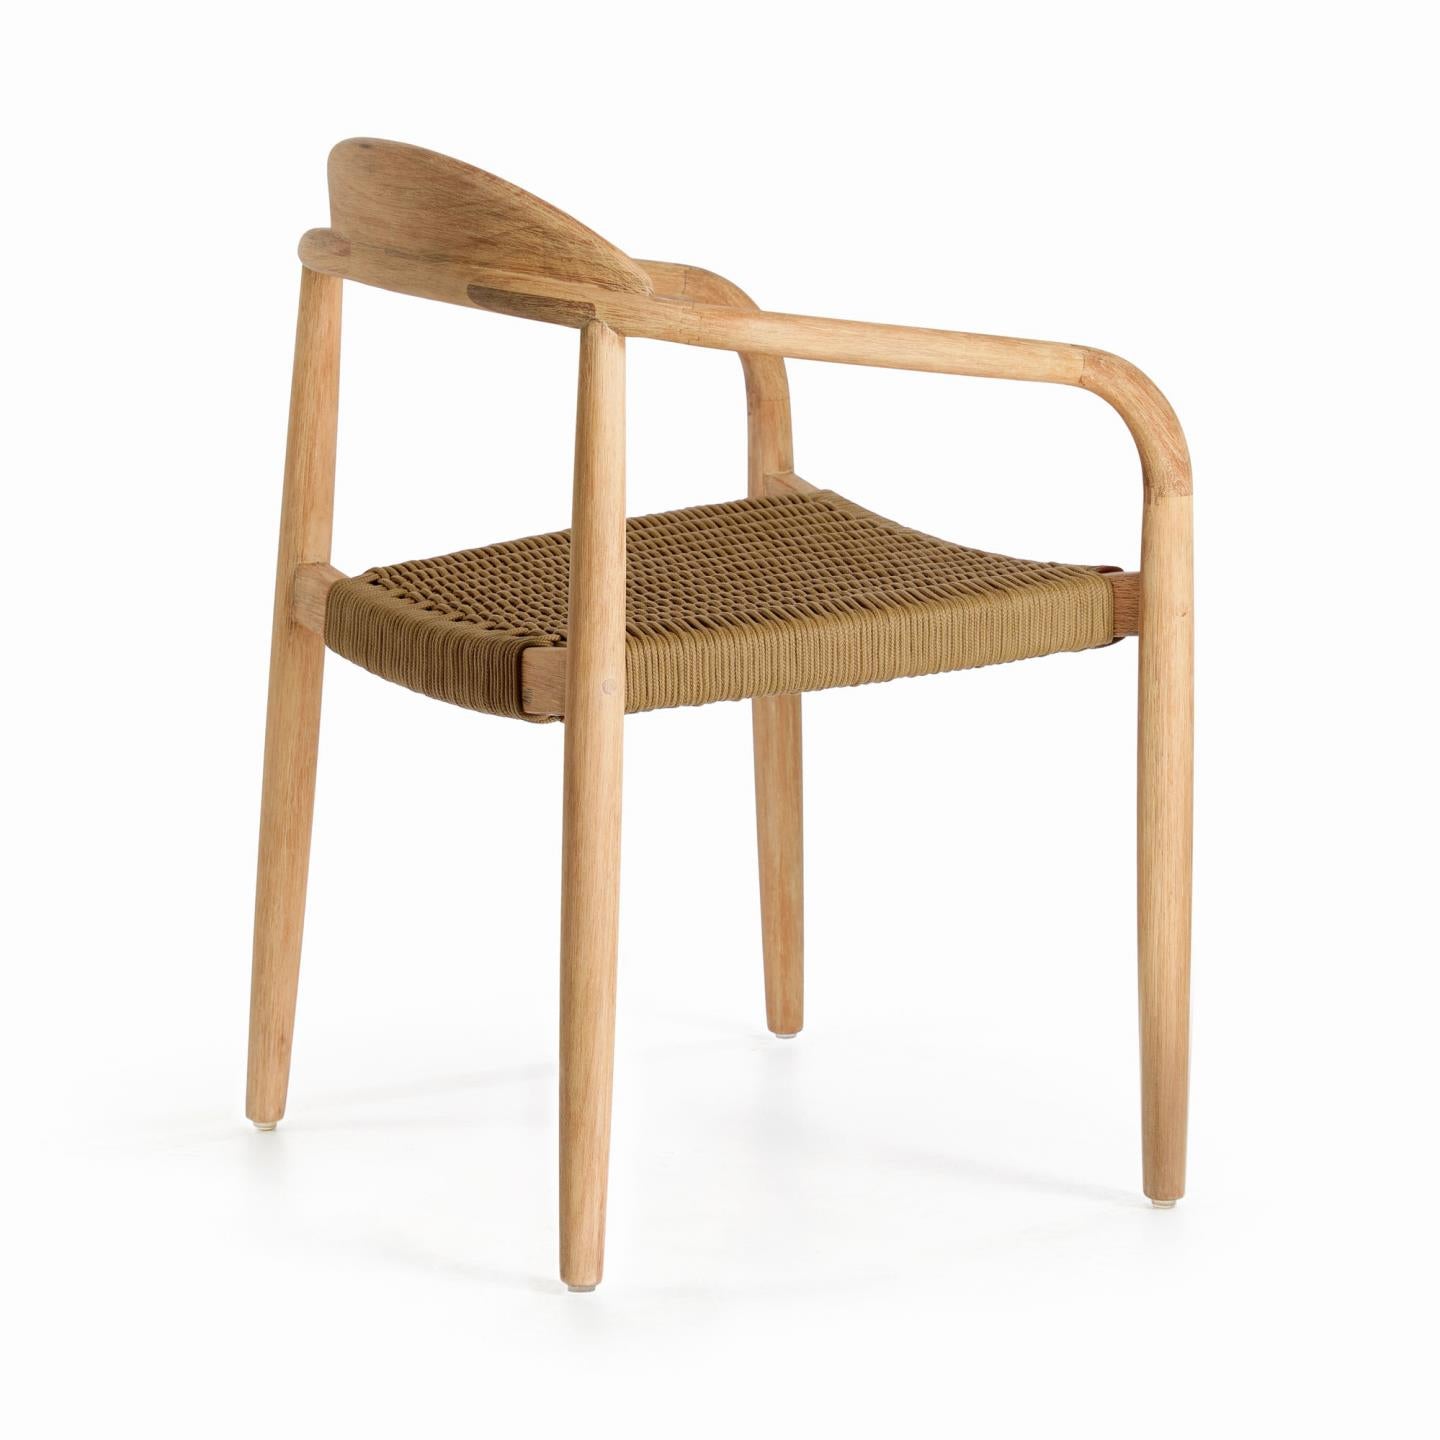 Nina egymásba rakható szék tömör akácfából, bézs színű kötélből készült ülőfelülettel